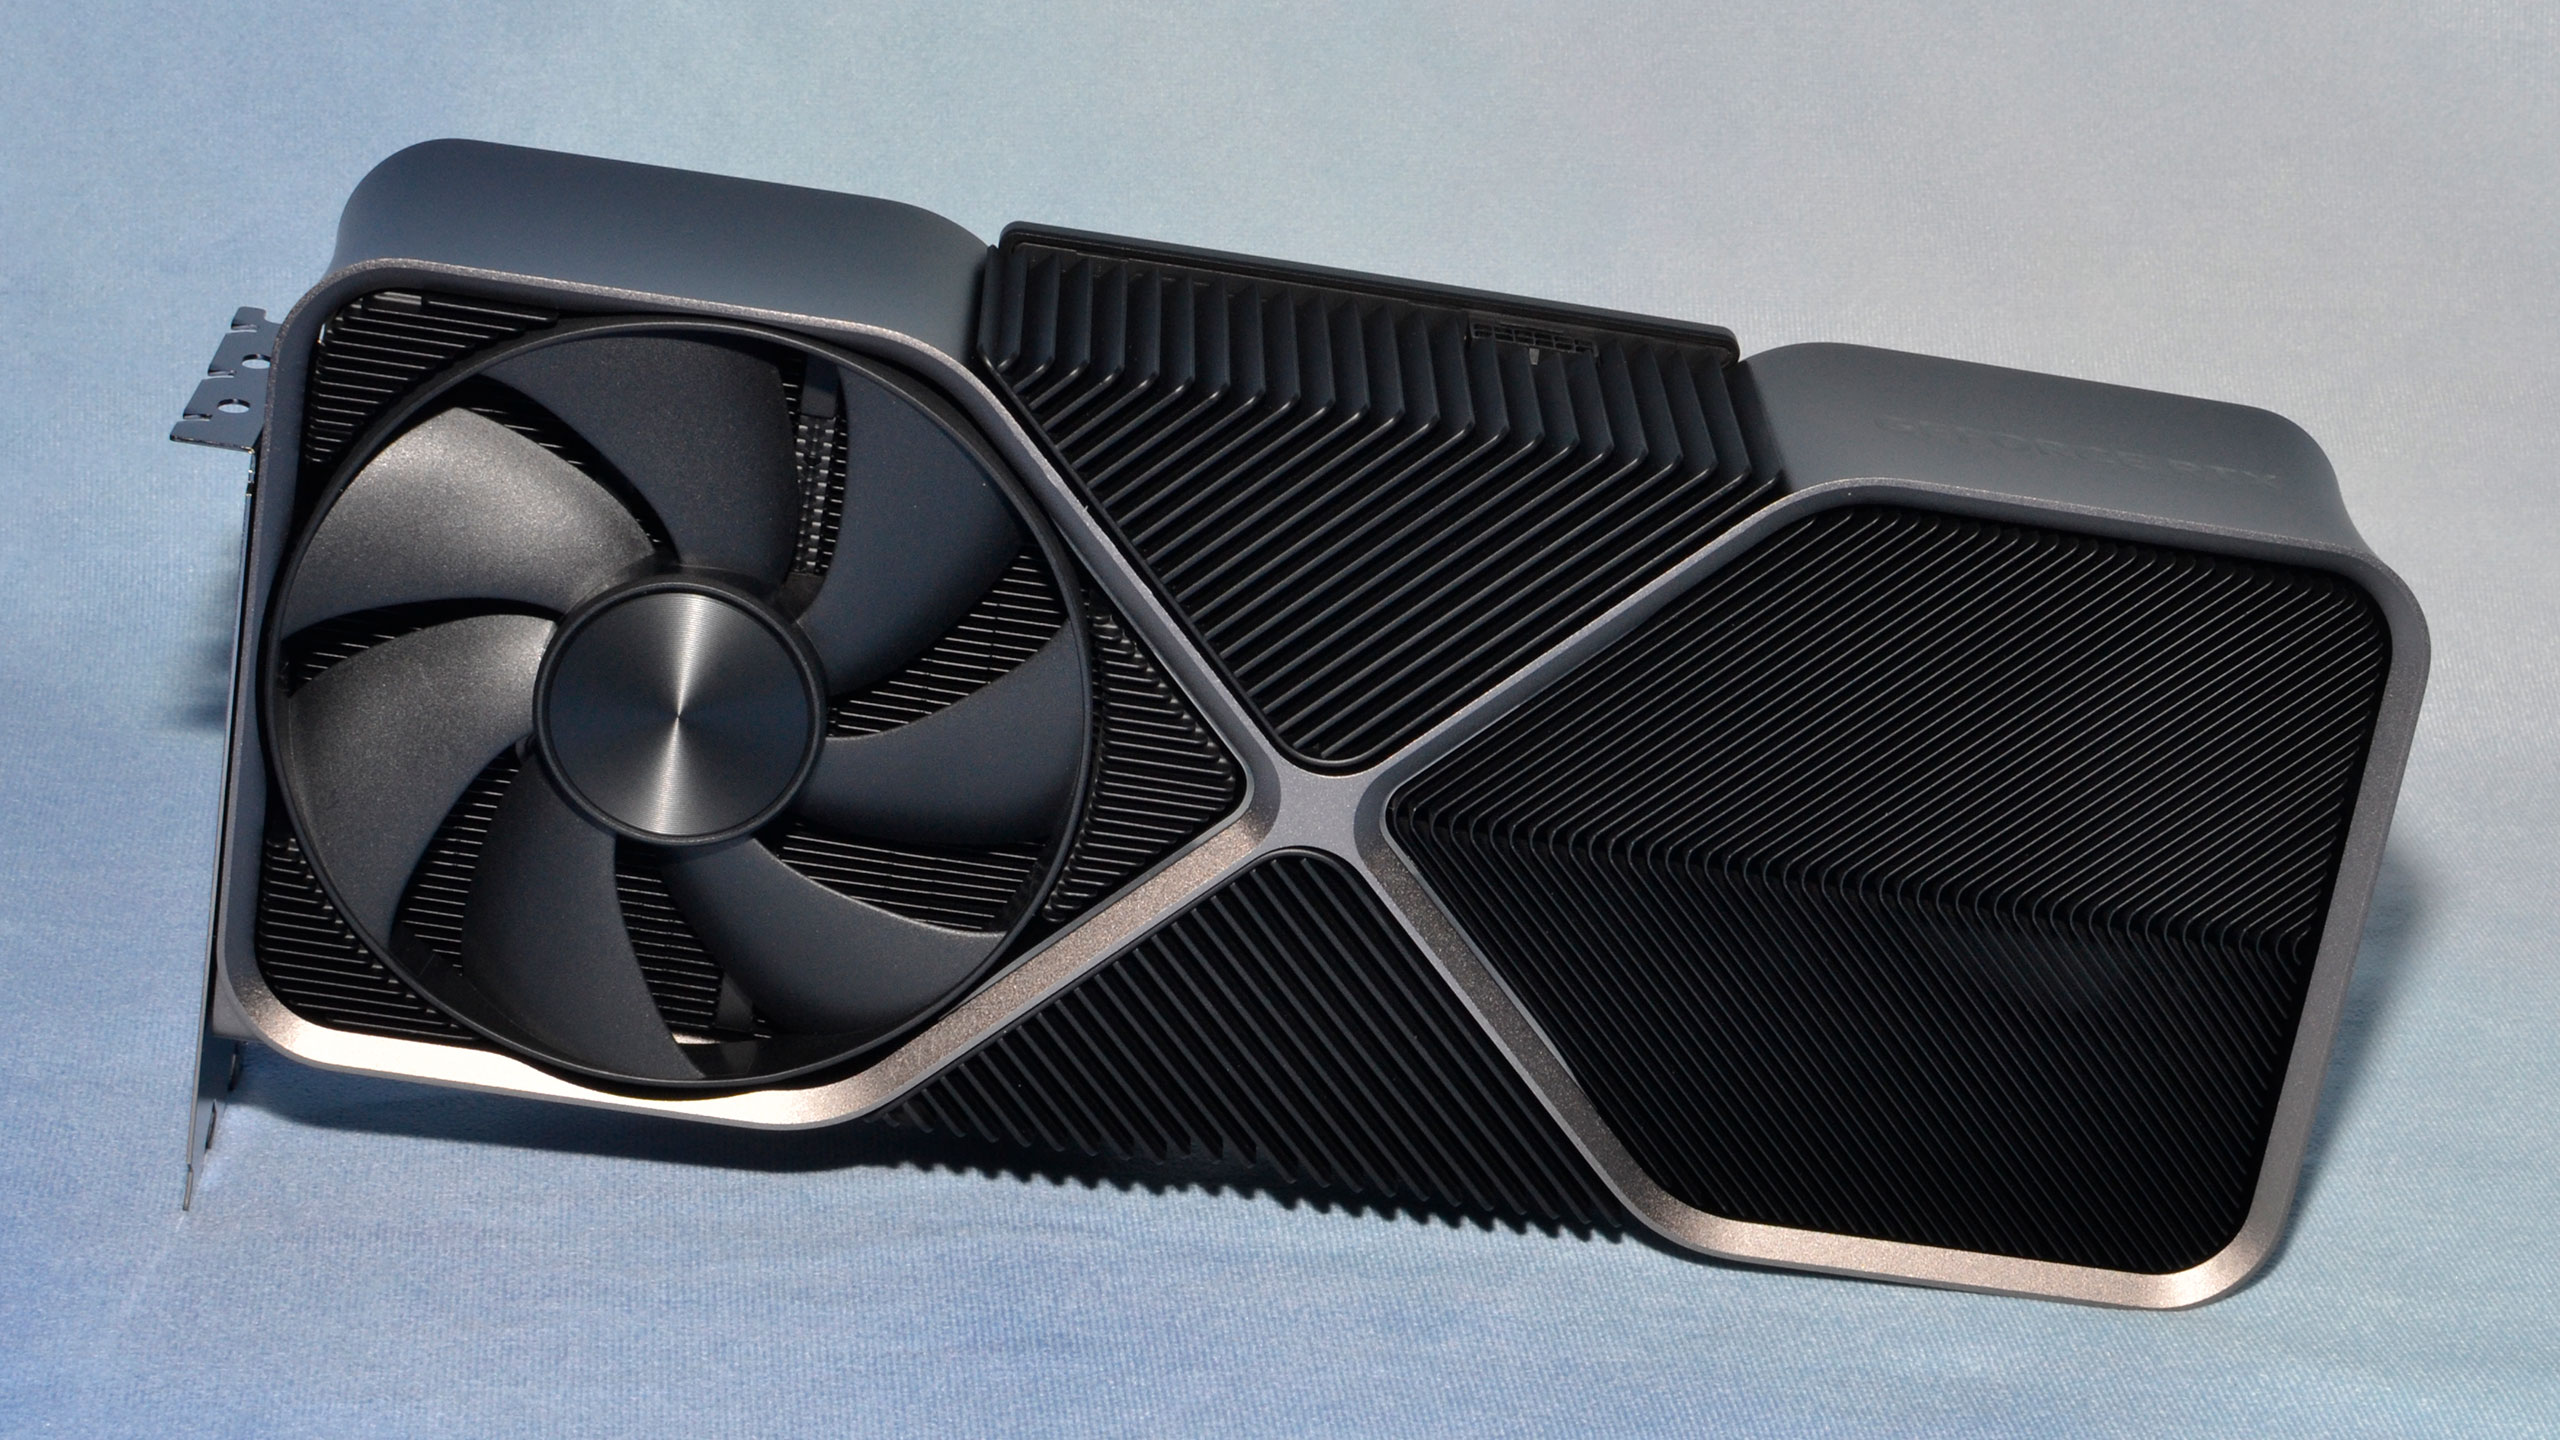 NVIDIA GeForce RTX 4080 ist viel schneller und energieeffizienter als GeForce RTX 3080 - erste Tests der 1199 $ teuren Grafikkarte veröffentlicht